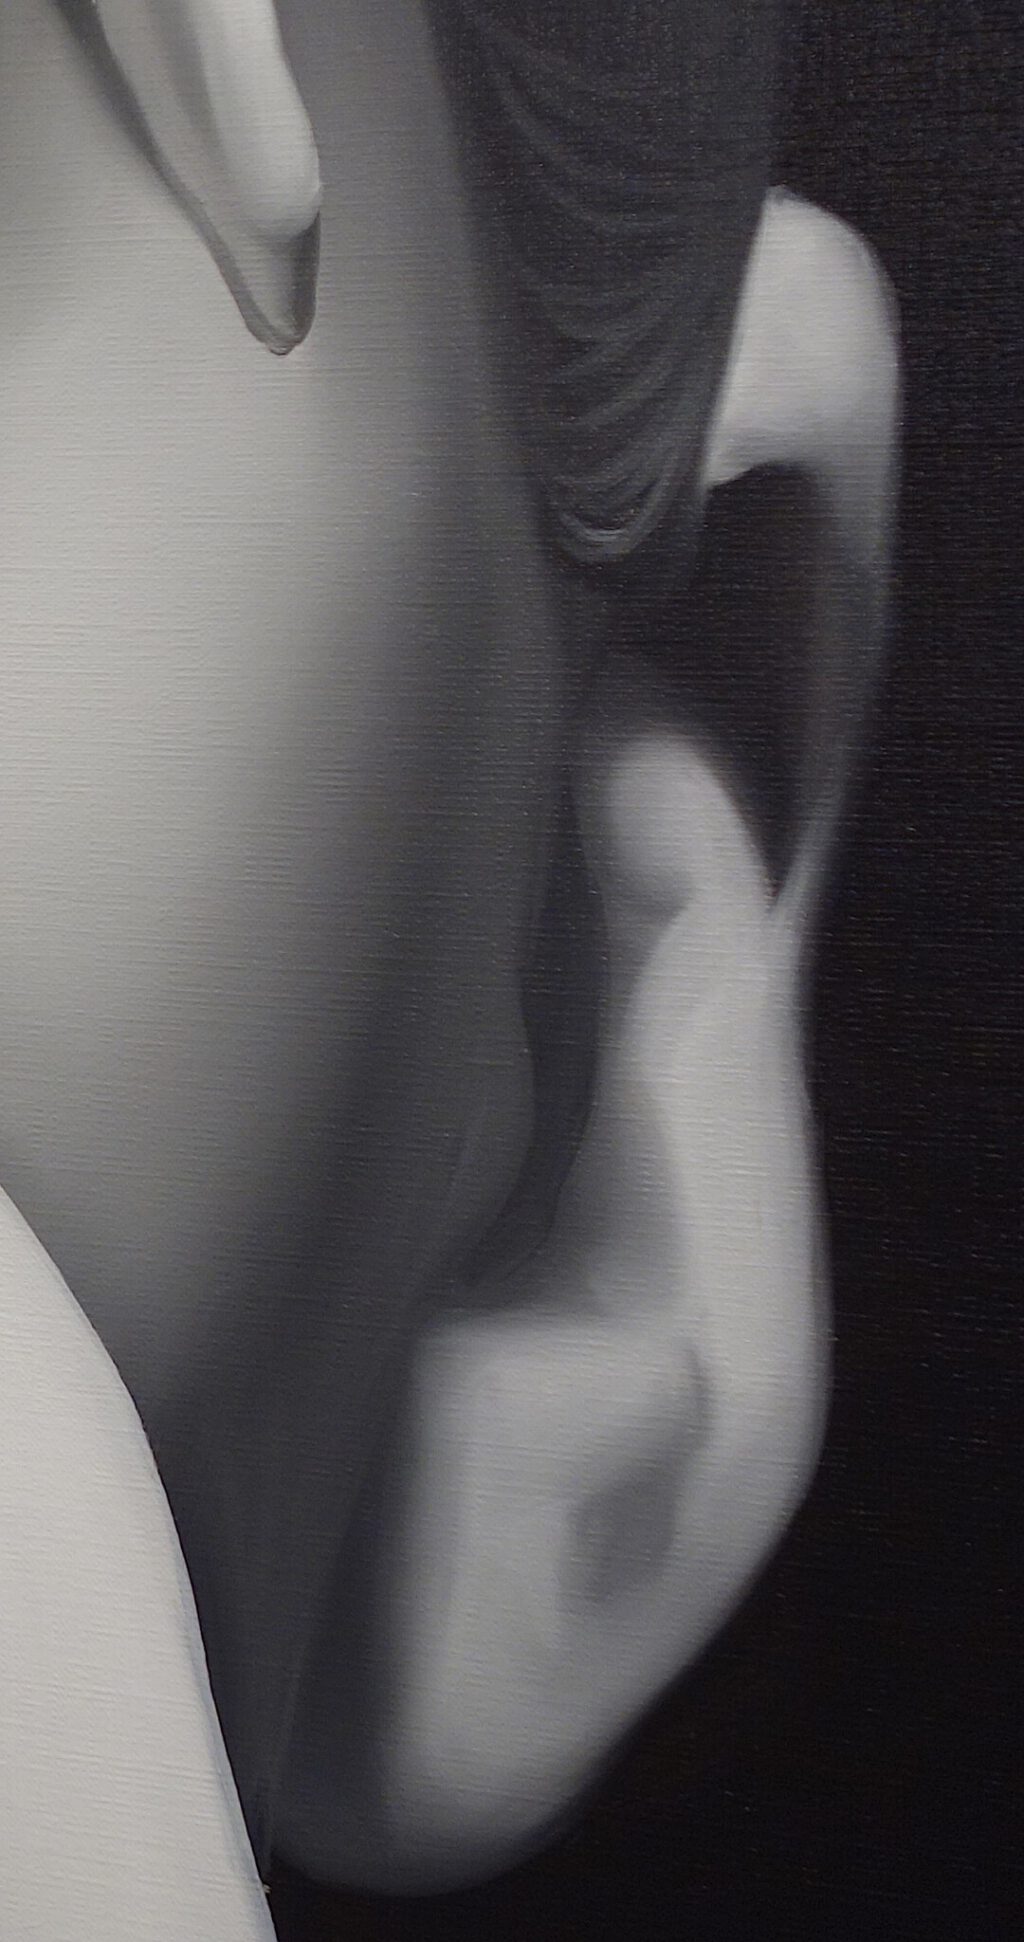 TOMOZAWA Kotao 友沢こたお slime CLXXXI 2023, oil on canvas, 194 x 162 cm, detail 2